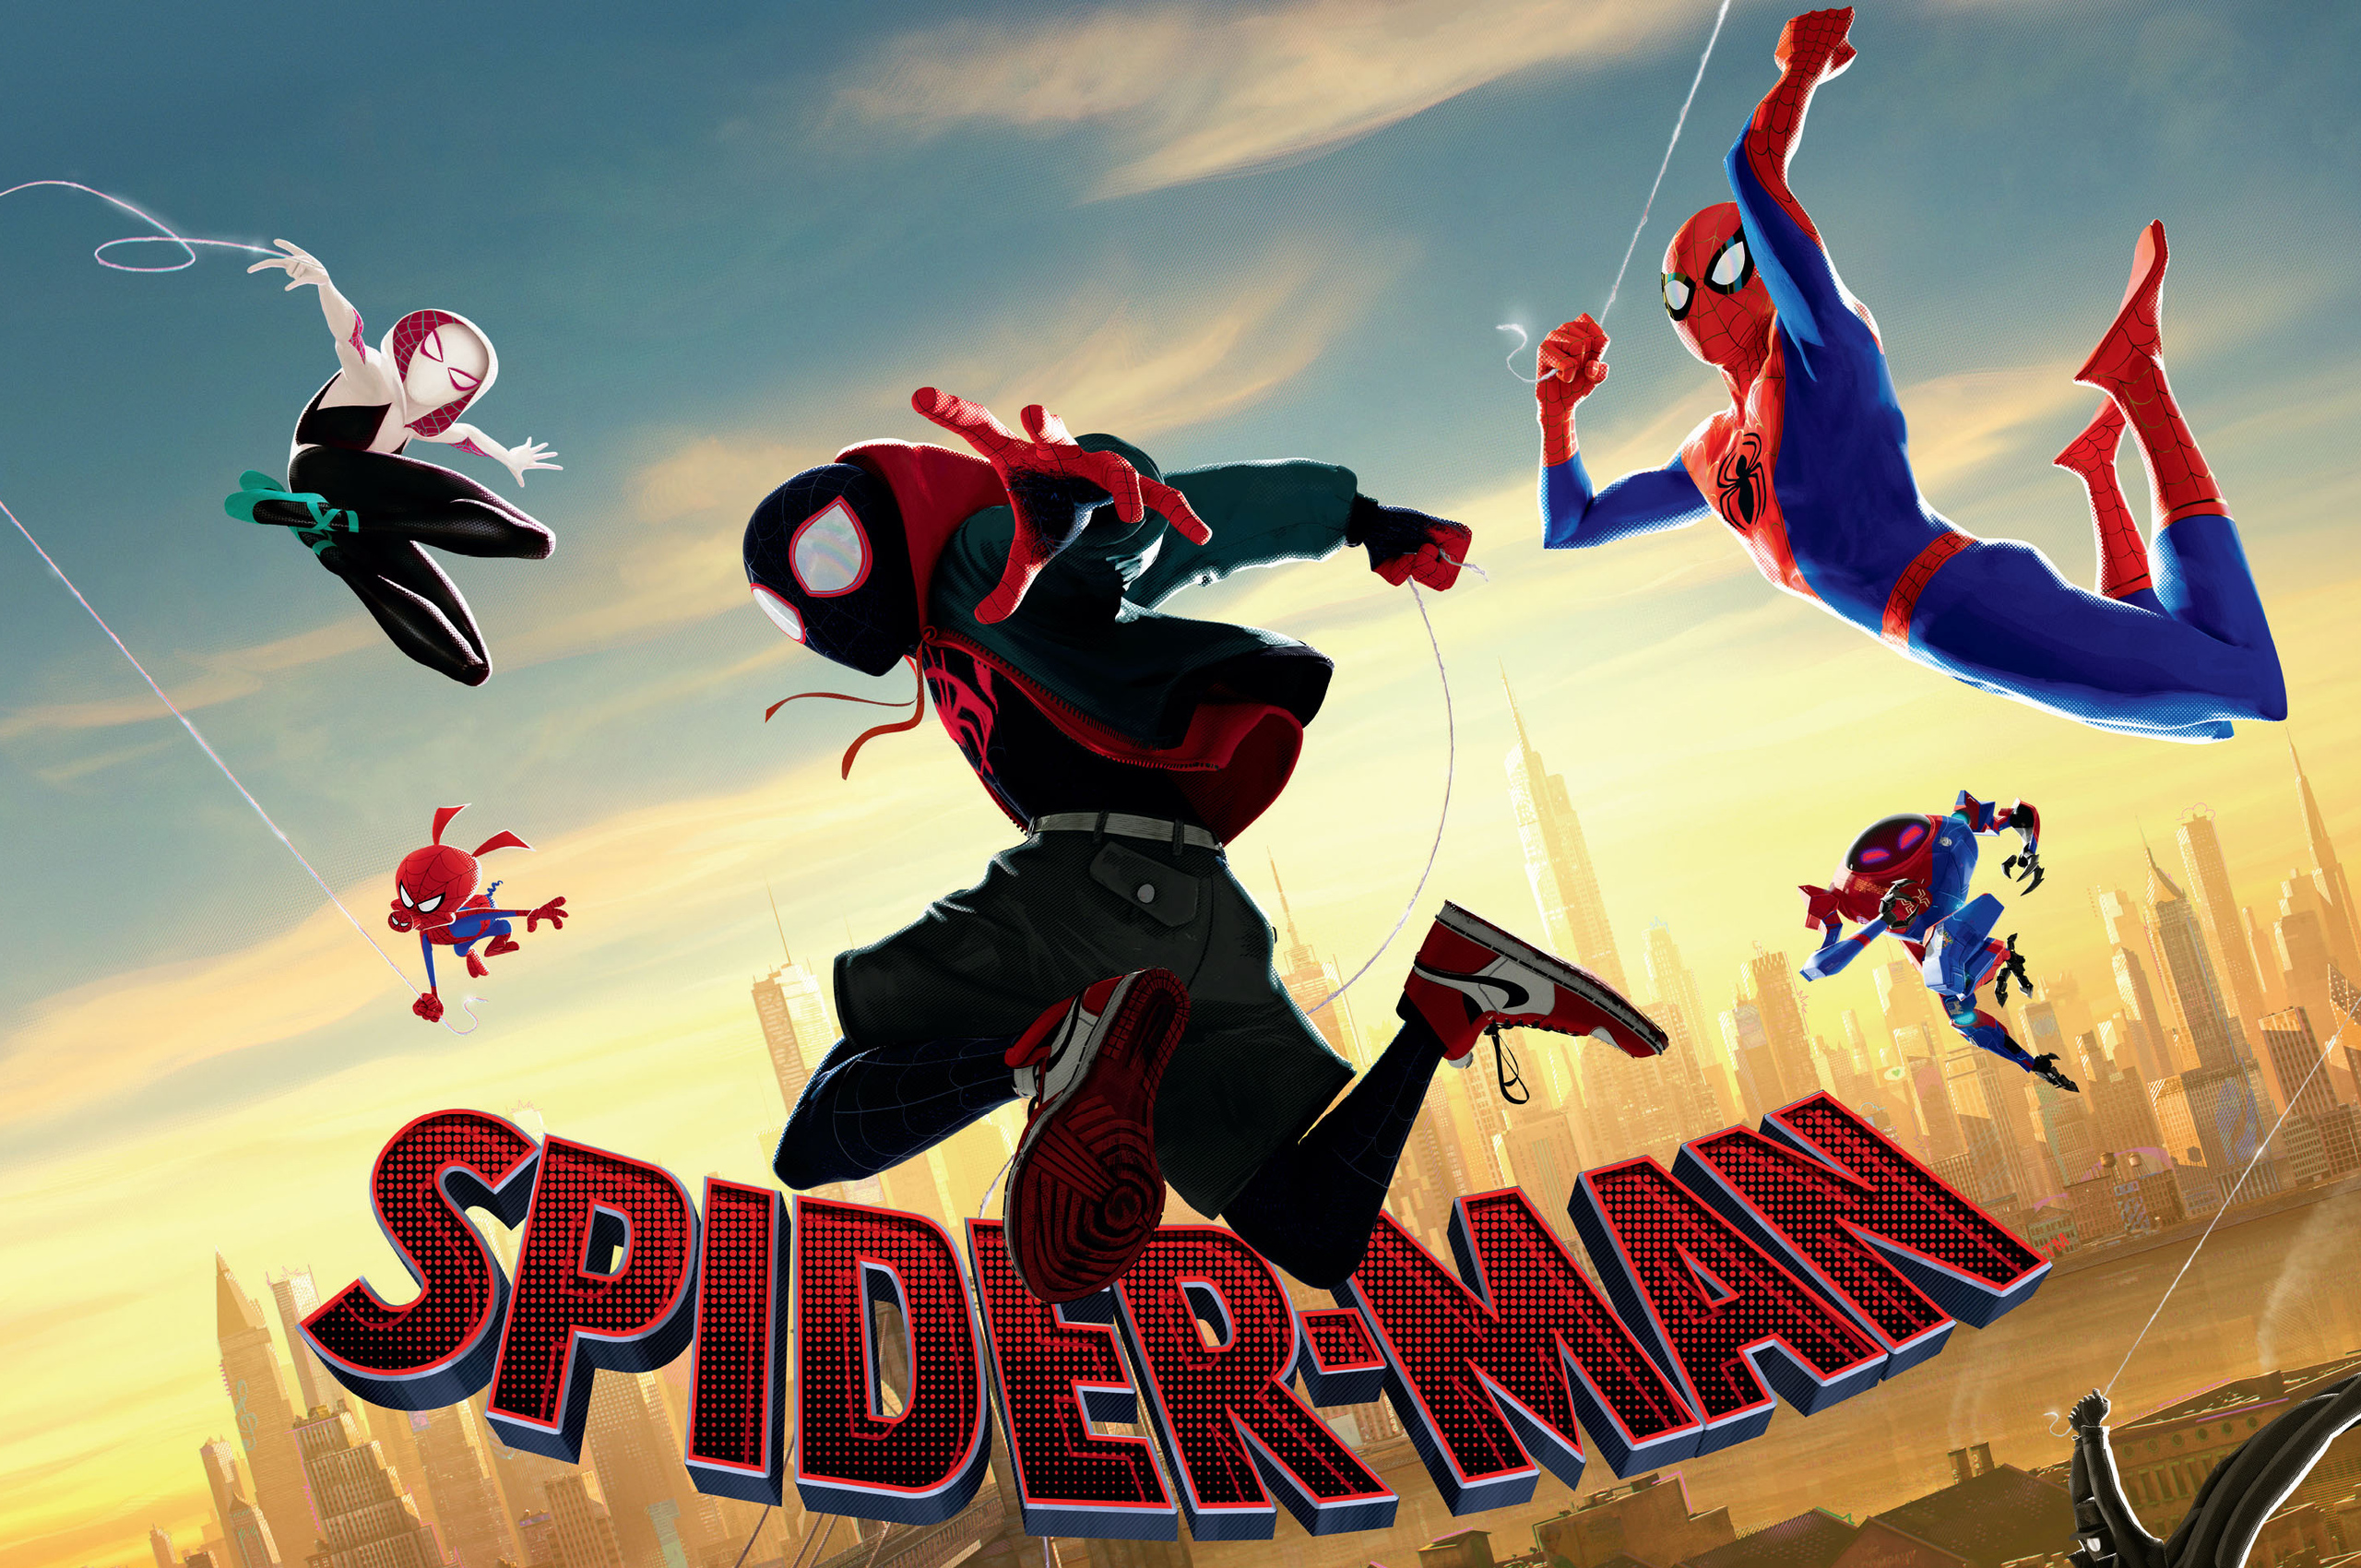 spiderman-into-the-spider-verse-movie-4k-movie-ud.jpg. 